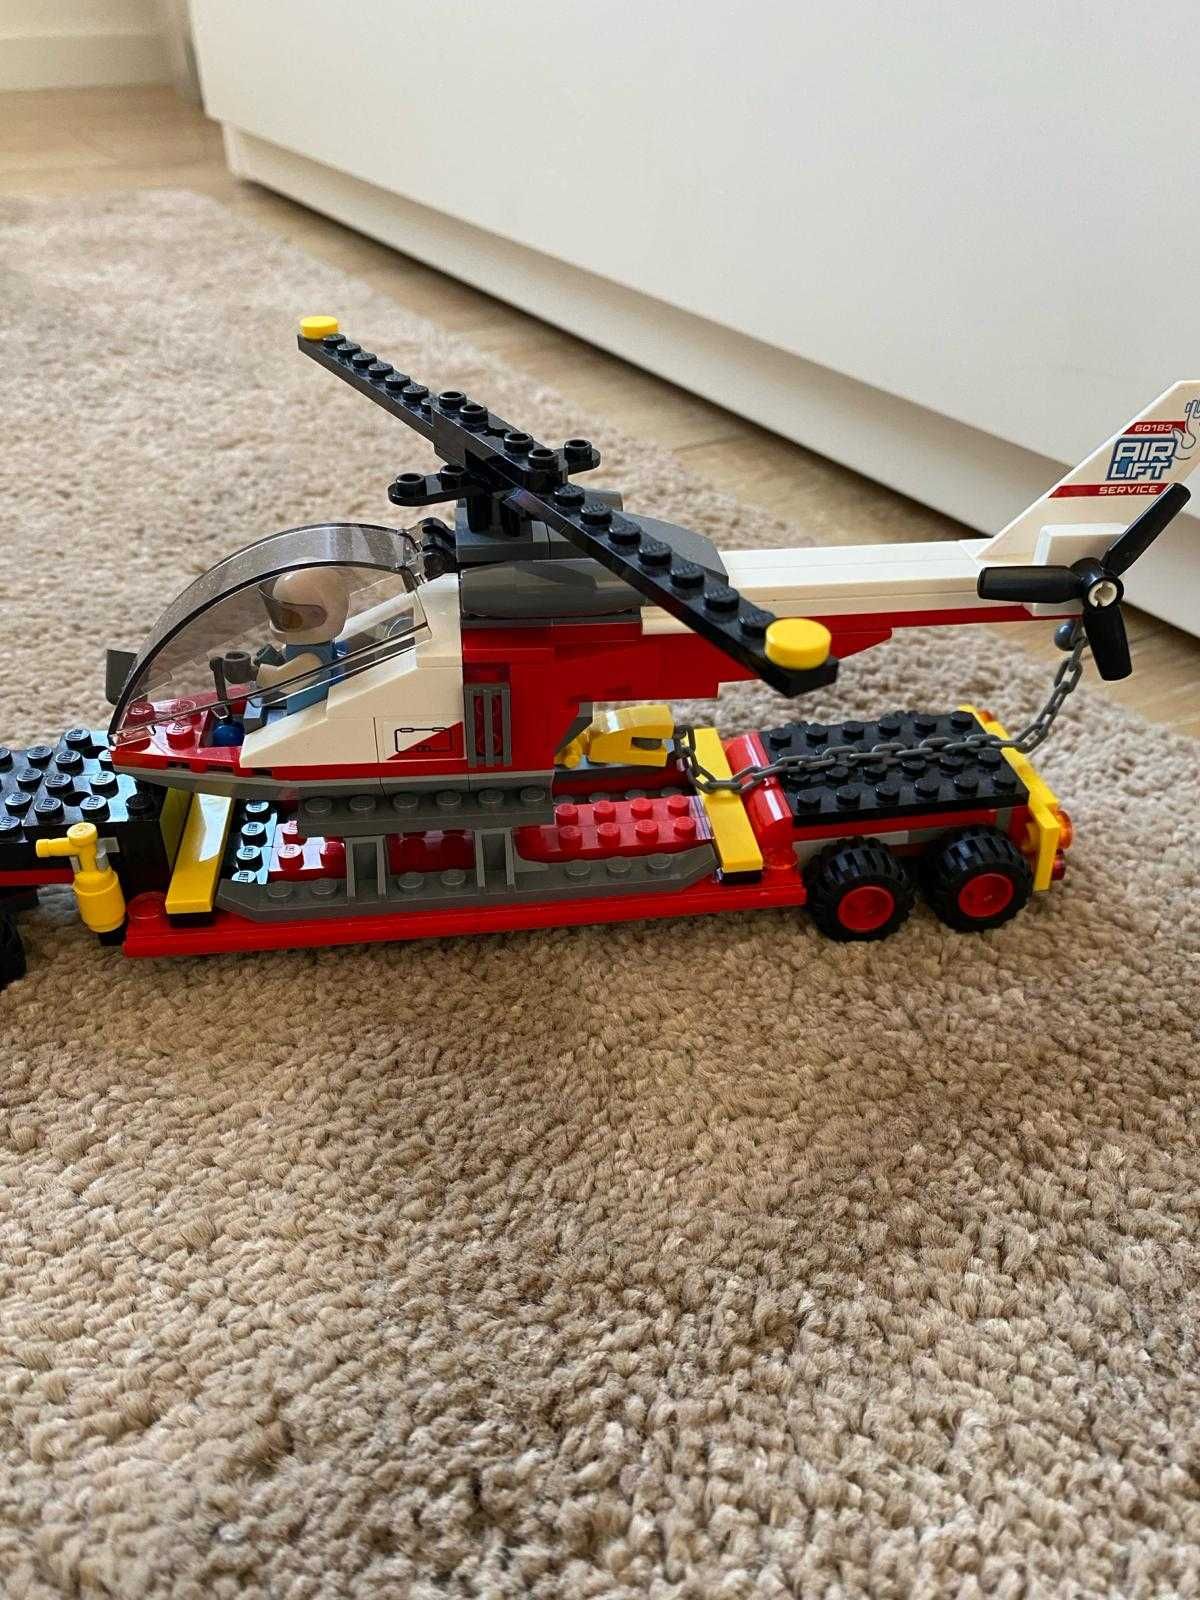 LEGO City Great Vehicles - Transport de incarcaturi grele 60183